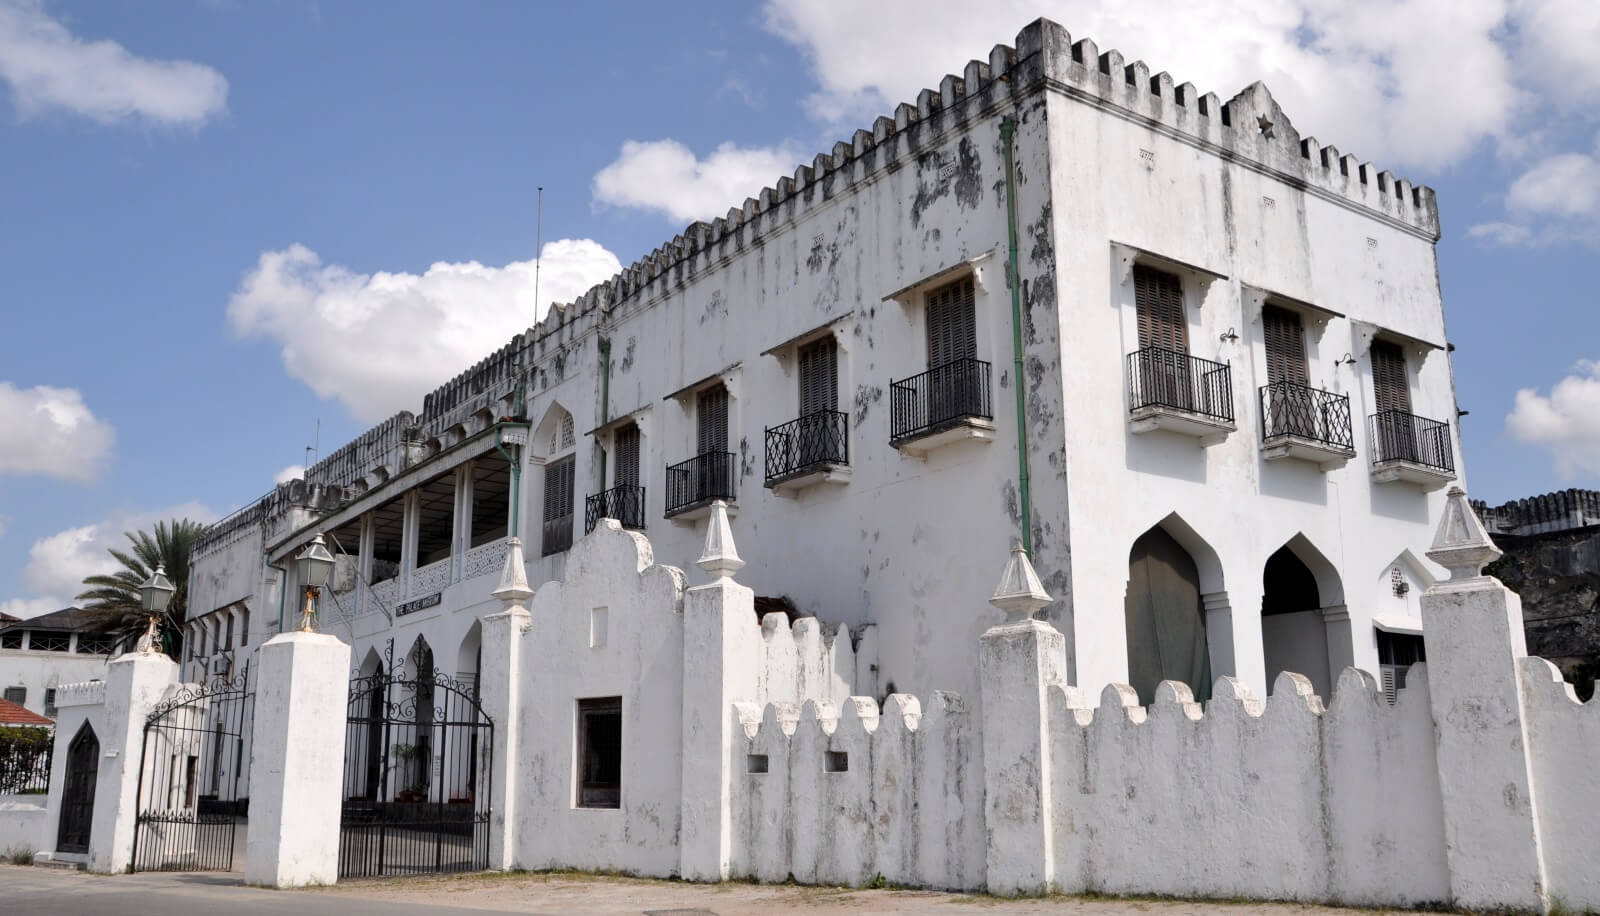 The Sultanate of Zanzibar